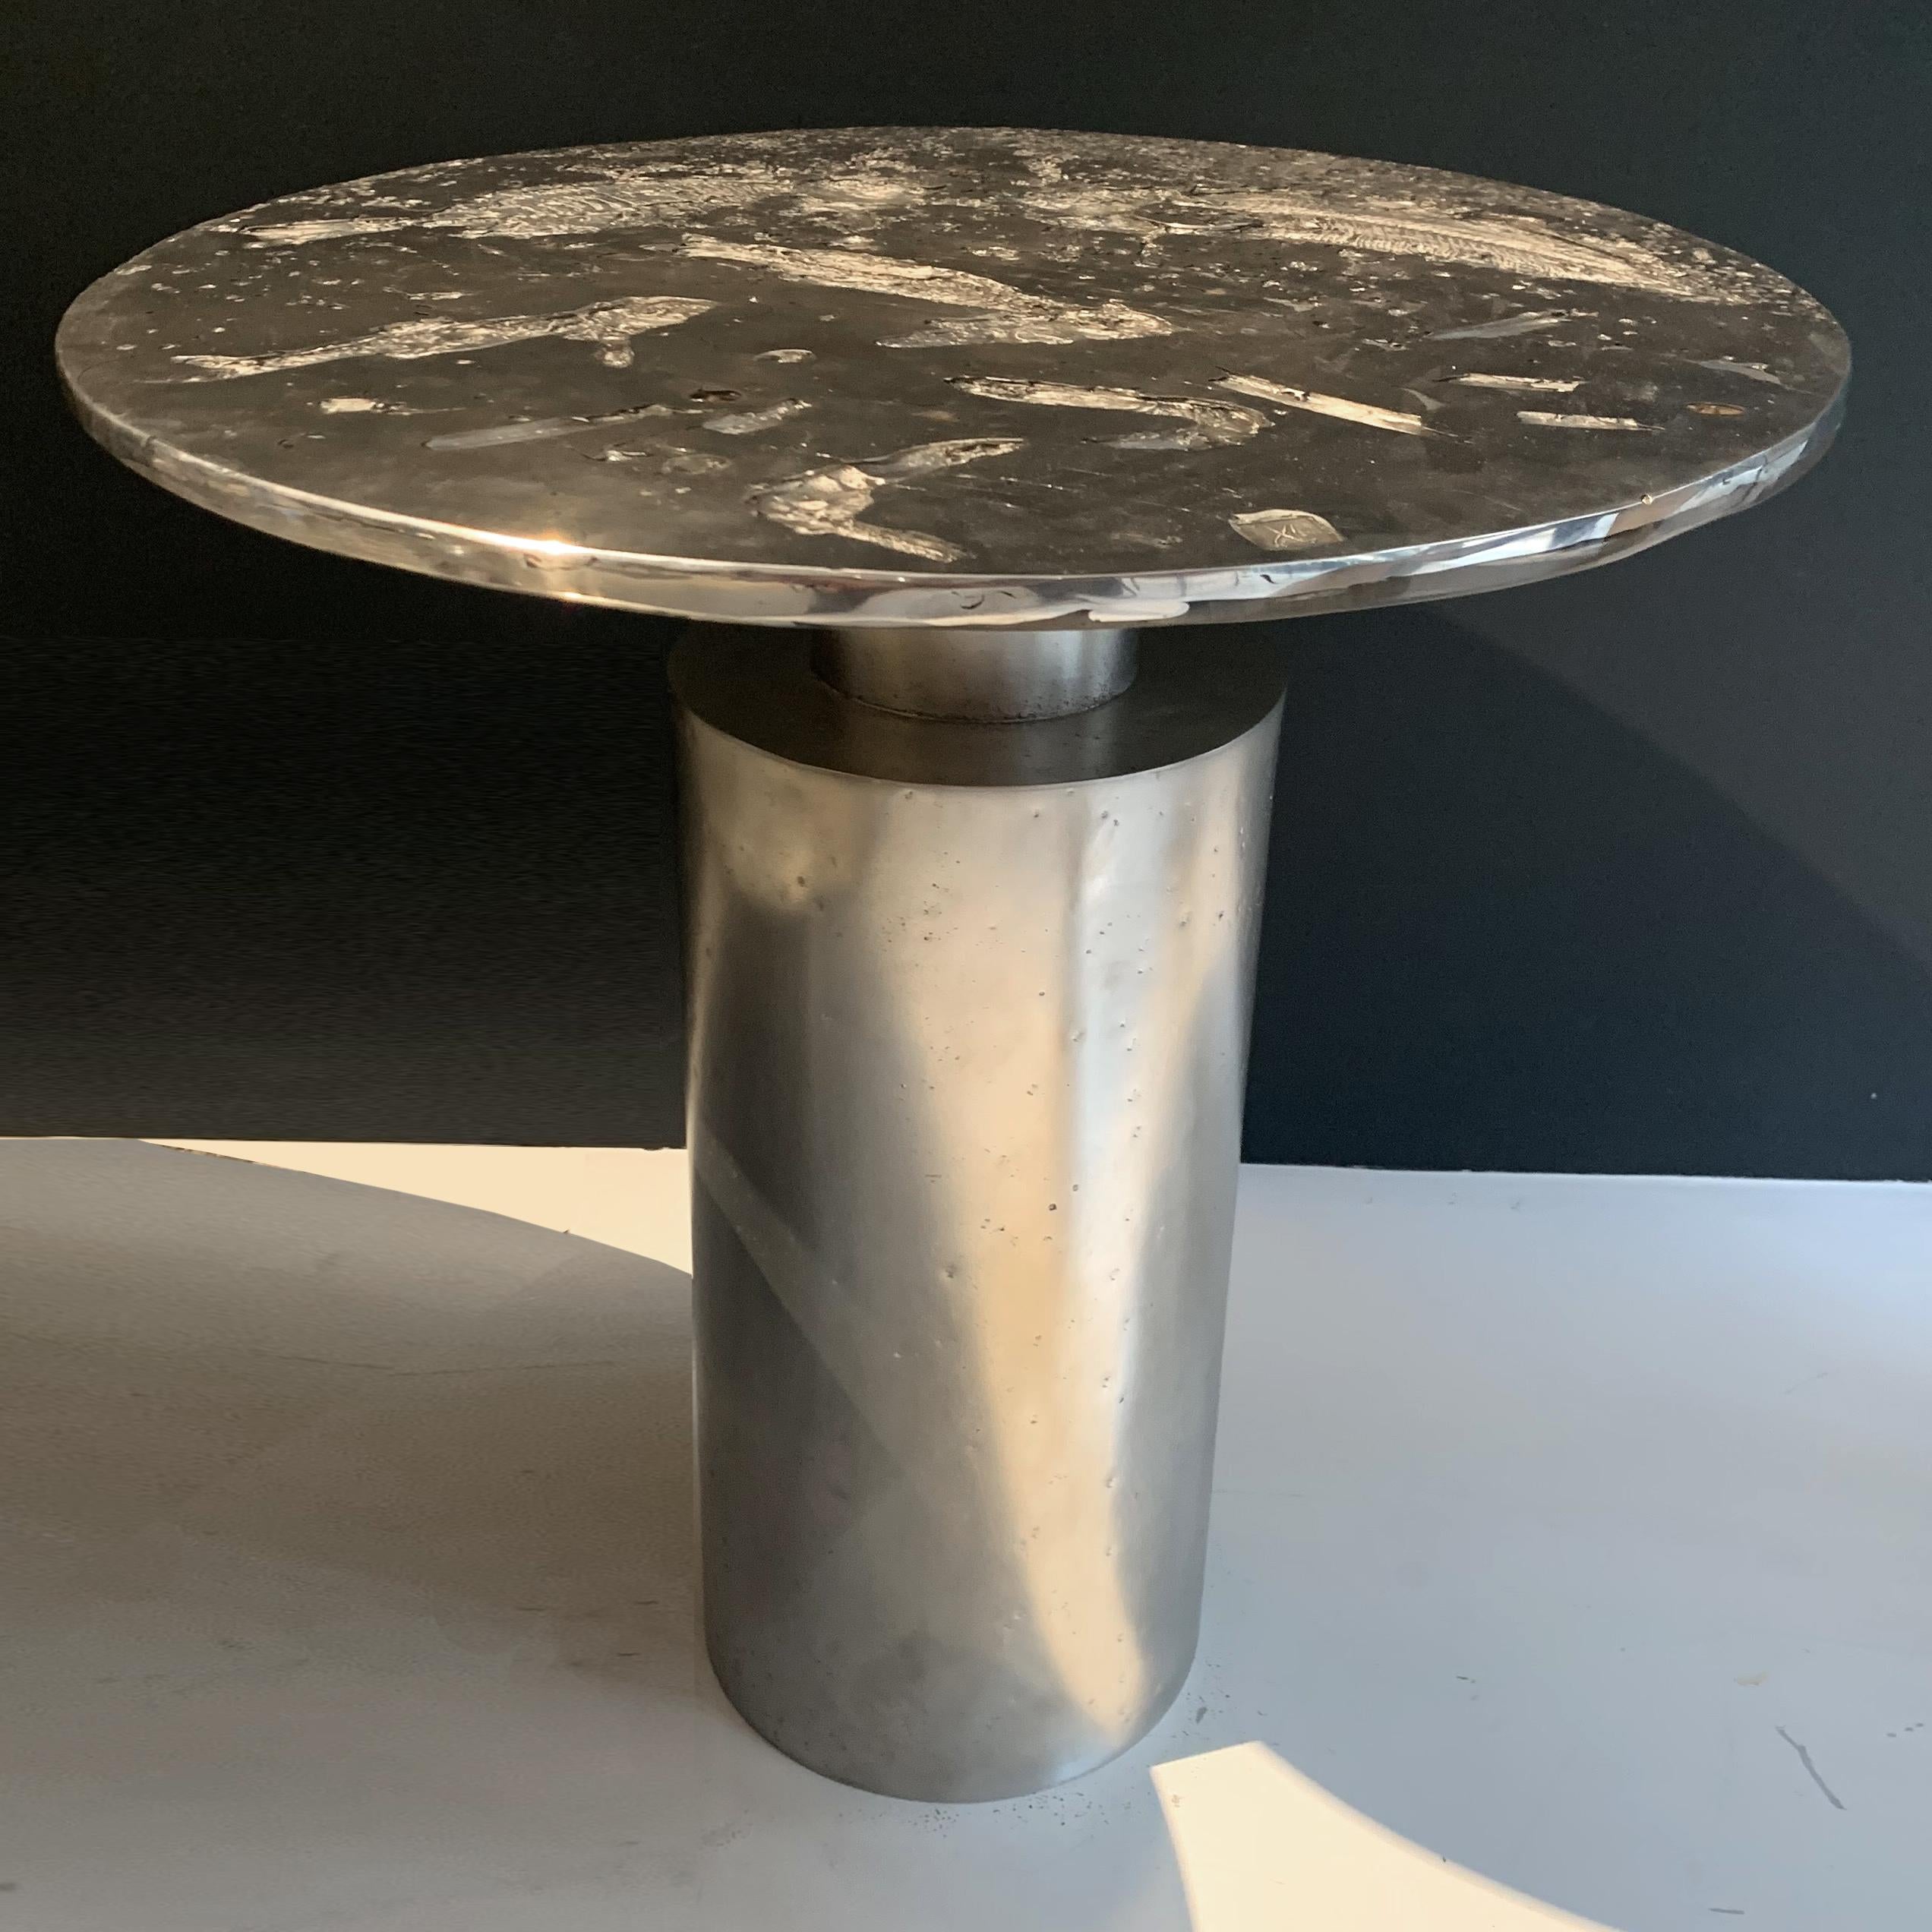 En stock : Cette table basse contemporaine est une pièce unique, créée par Xavier Lavergne et réalisée en étain fondu avec de la résine de cristal. La table est fabriquée à la main en France. Pour ce projet, Xavier Lavergne a coulé de l'étain sur de